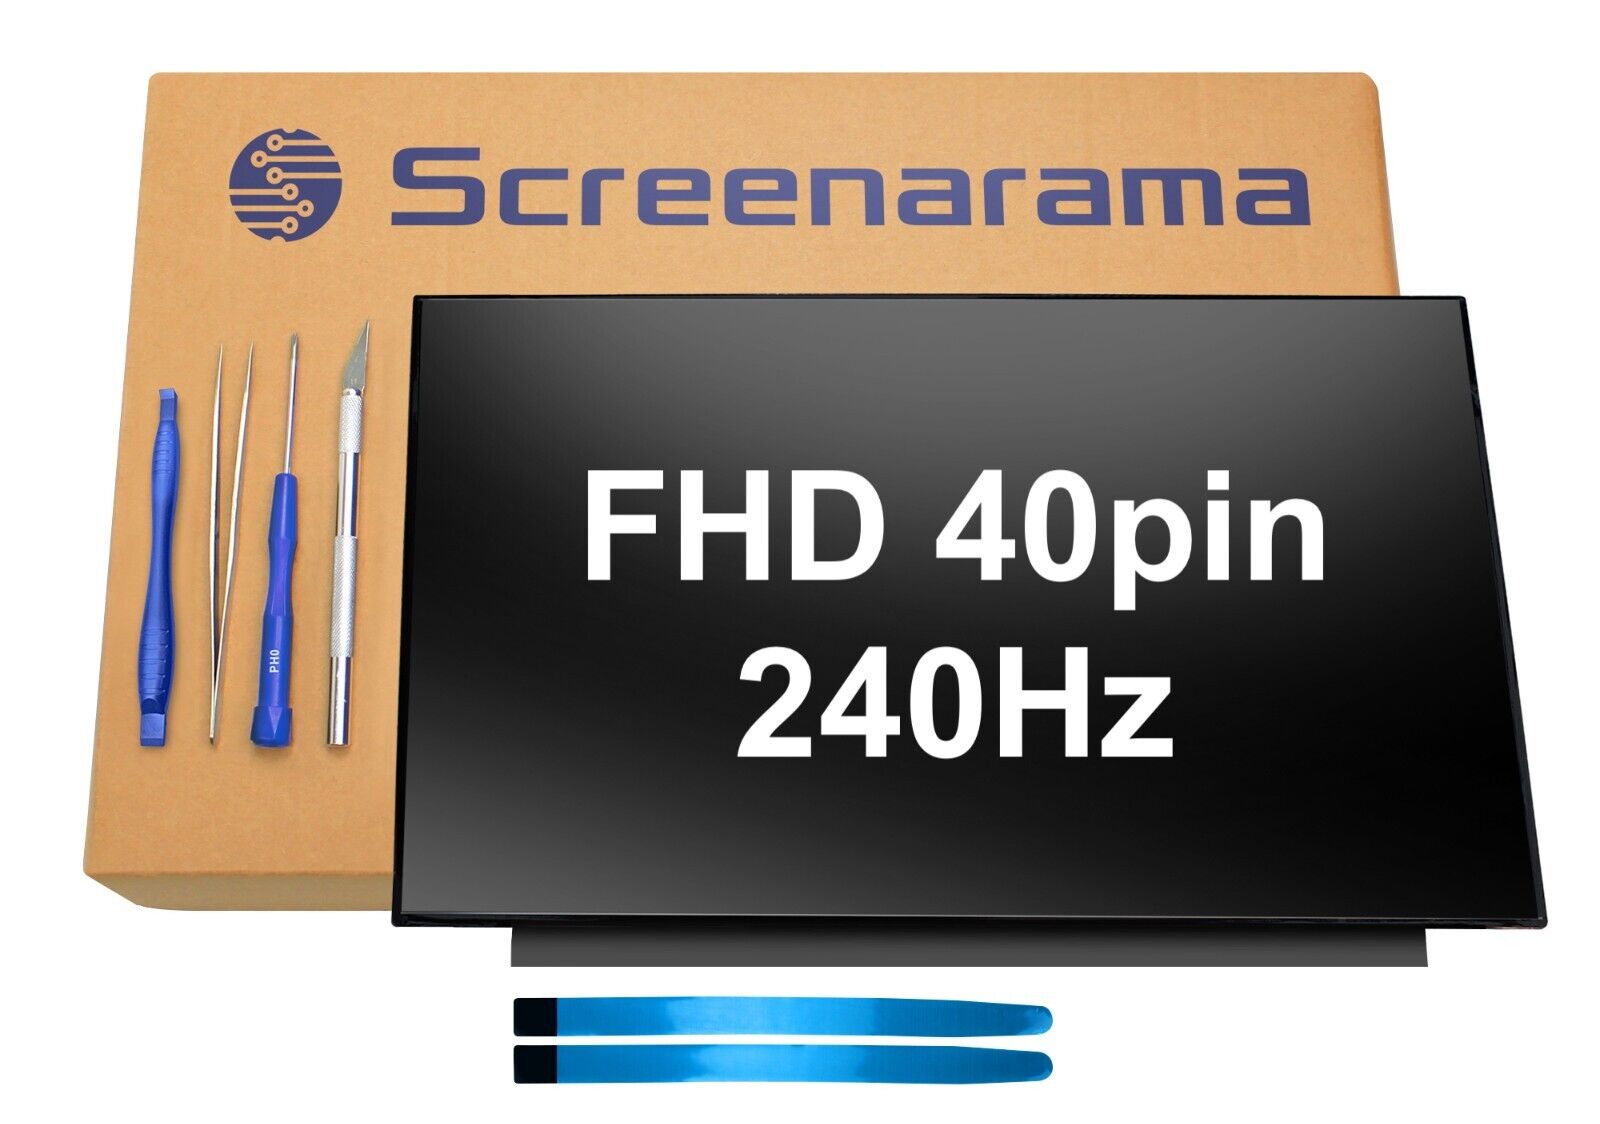 Sharp LQ156M1JW03 240Hz FHD 40pin LED LCD Screen + Tools SCREENARAMA * FAST